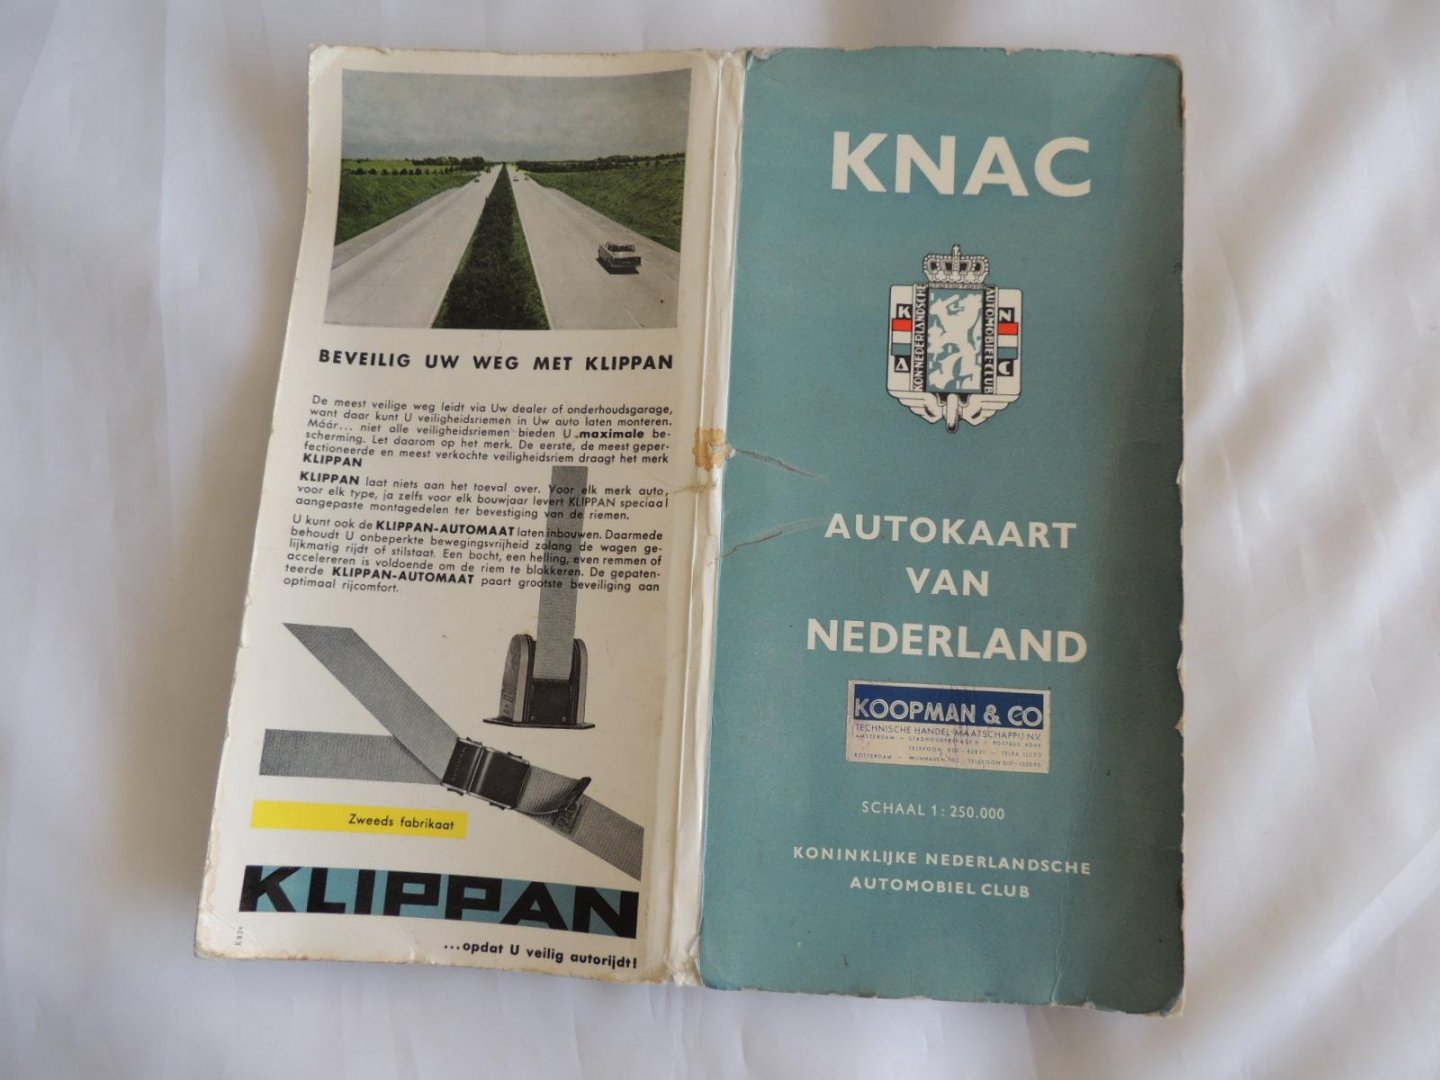  - KNAC Autokaart  van Nederland 1:250.000